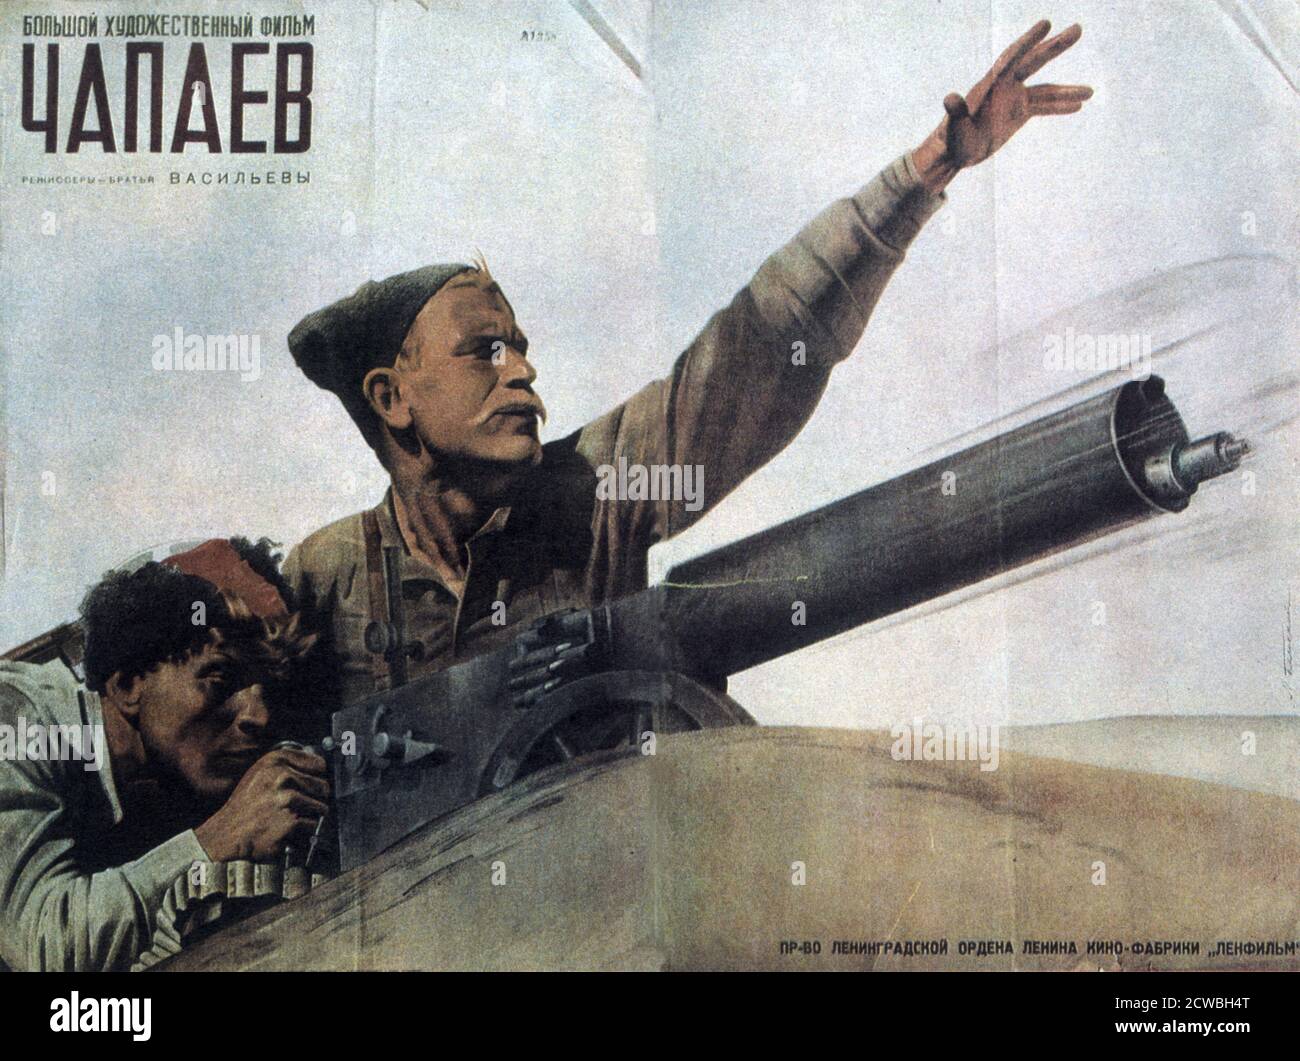 Poster de film pour 'Chapaev' un film de guerre soviétique de 1934, réalisé par les frères Vasilyev pour Lenfilm. Le film est une biographie fictive de Vasily Ivanovitch Chapaev (1887-1919), un commandant de l'Armée rouge qui est devenu un héros de la guerre civile russe. Banque D'Images